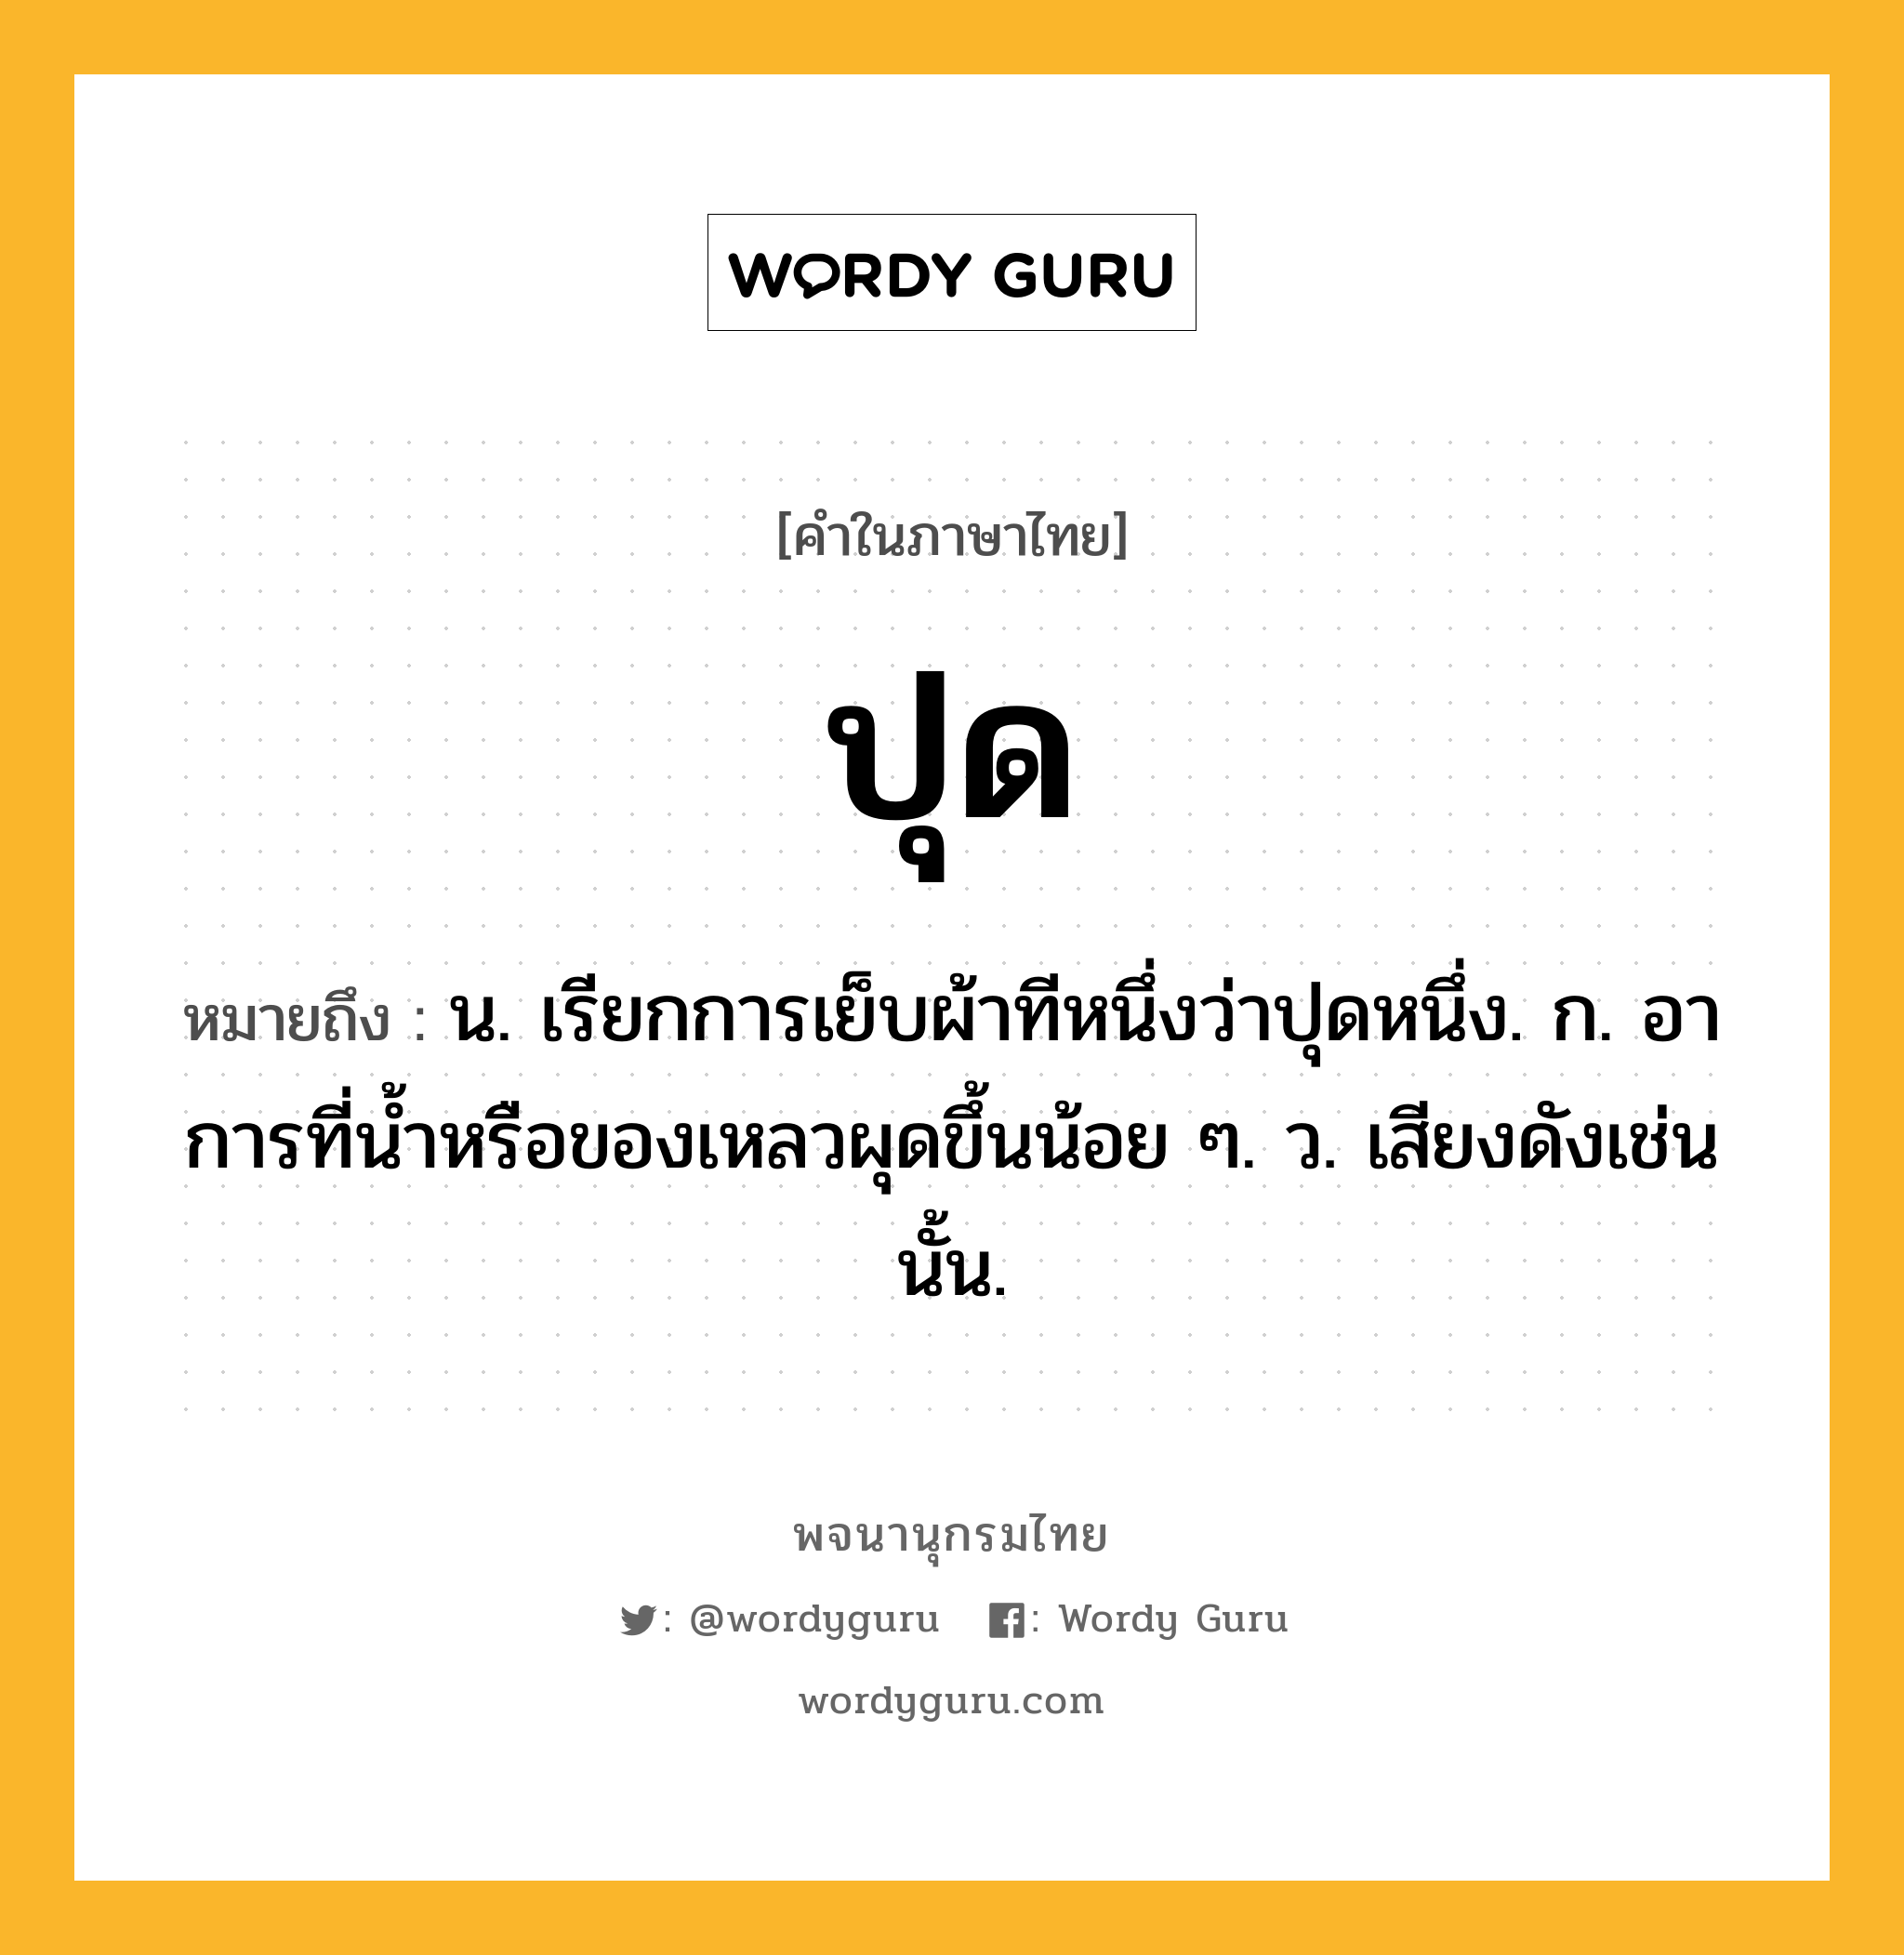 ปุด ความหมาย หมายถึงอะไร?, คำในภาษาไทย ปุด หมายถึง น. เรียกการเย็บผ้าทีหนึ่งว่าปุดหนึ่ง. ก. อาการที่นํ้าหรือของเหลวผุดขึ้นน้อย ๆ. ว. เสียงดังเช่นนั้น.